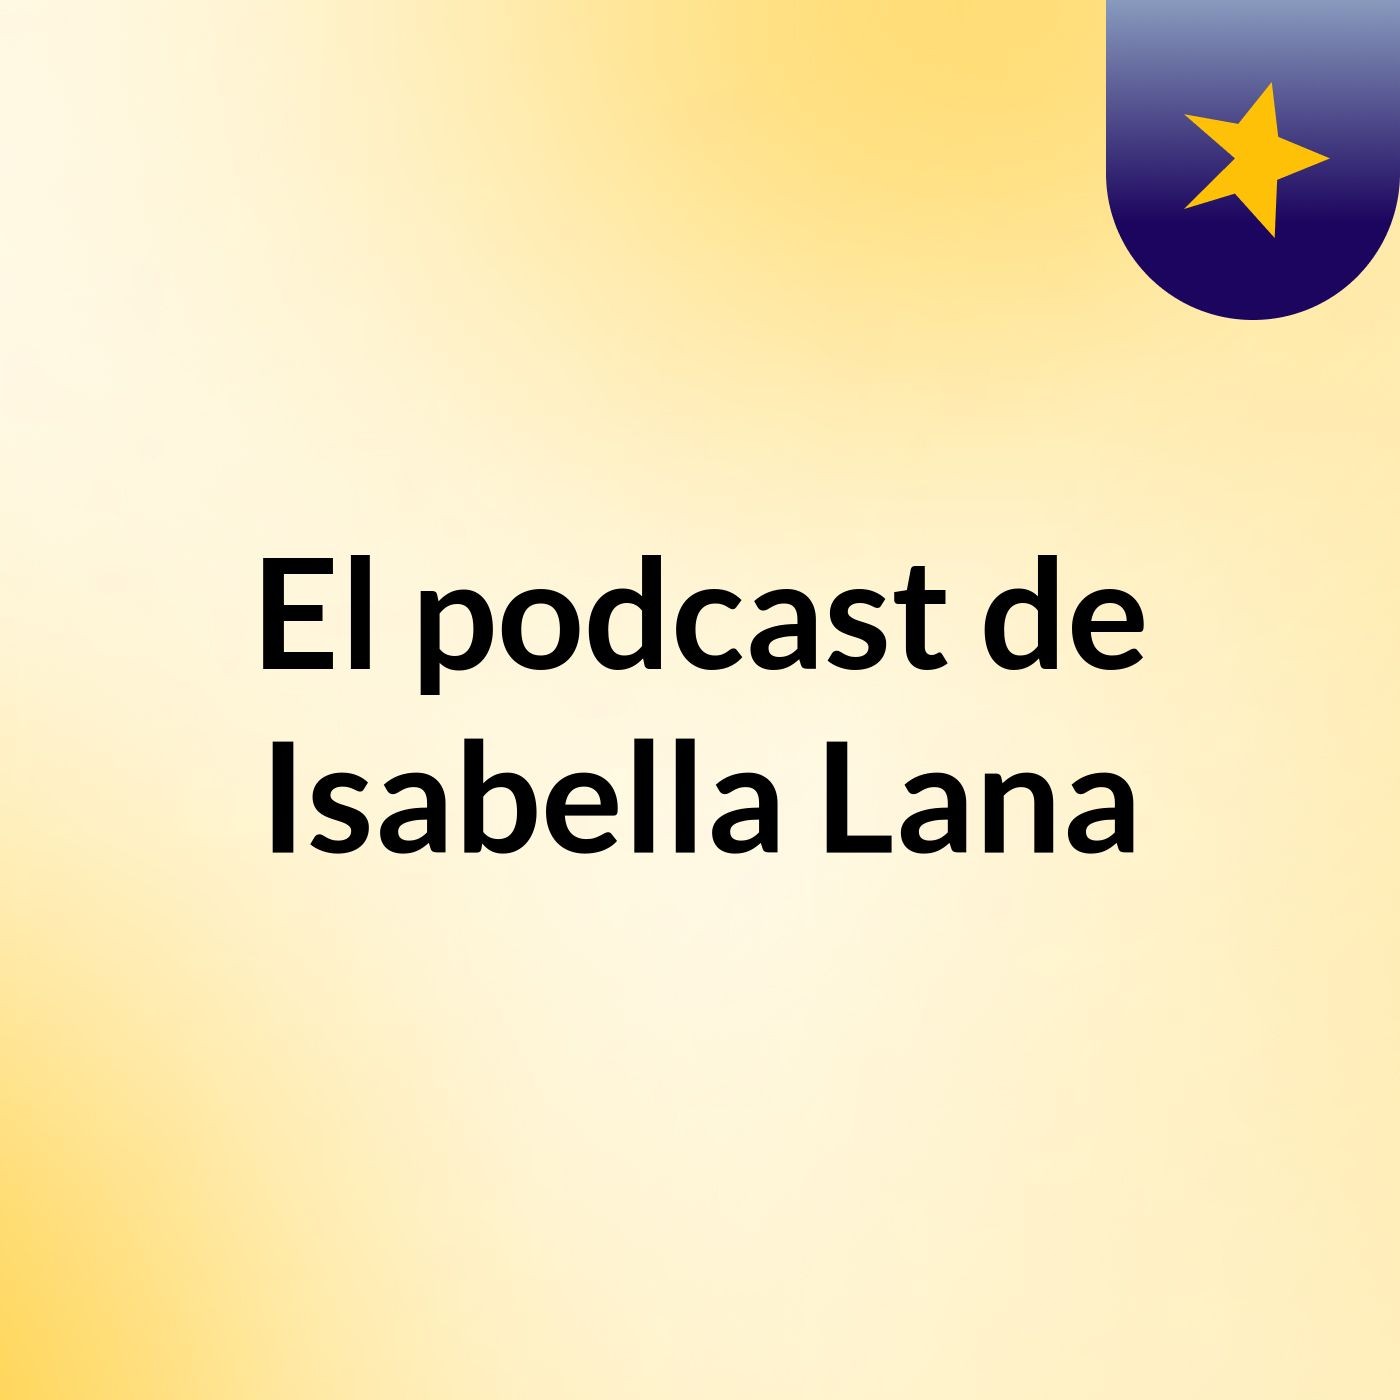 El podcast de Isabella Lana